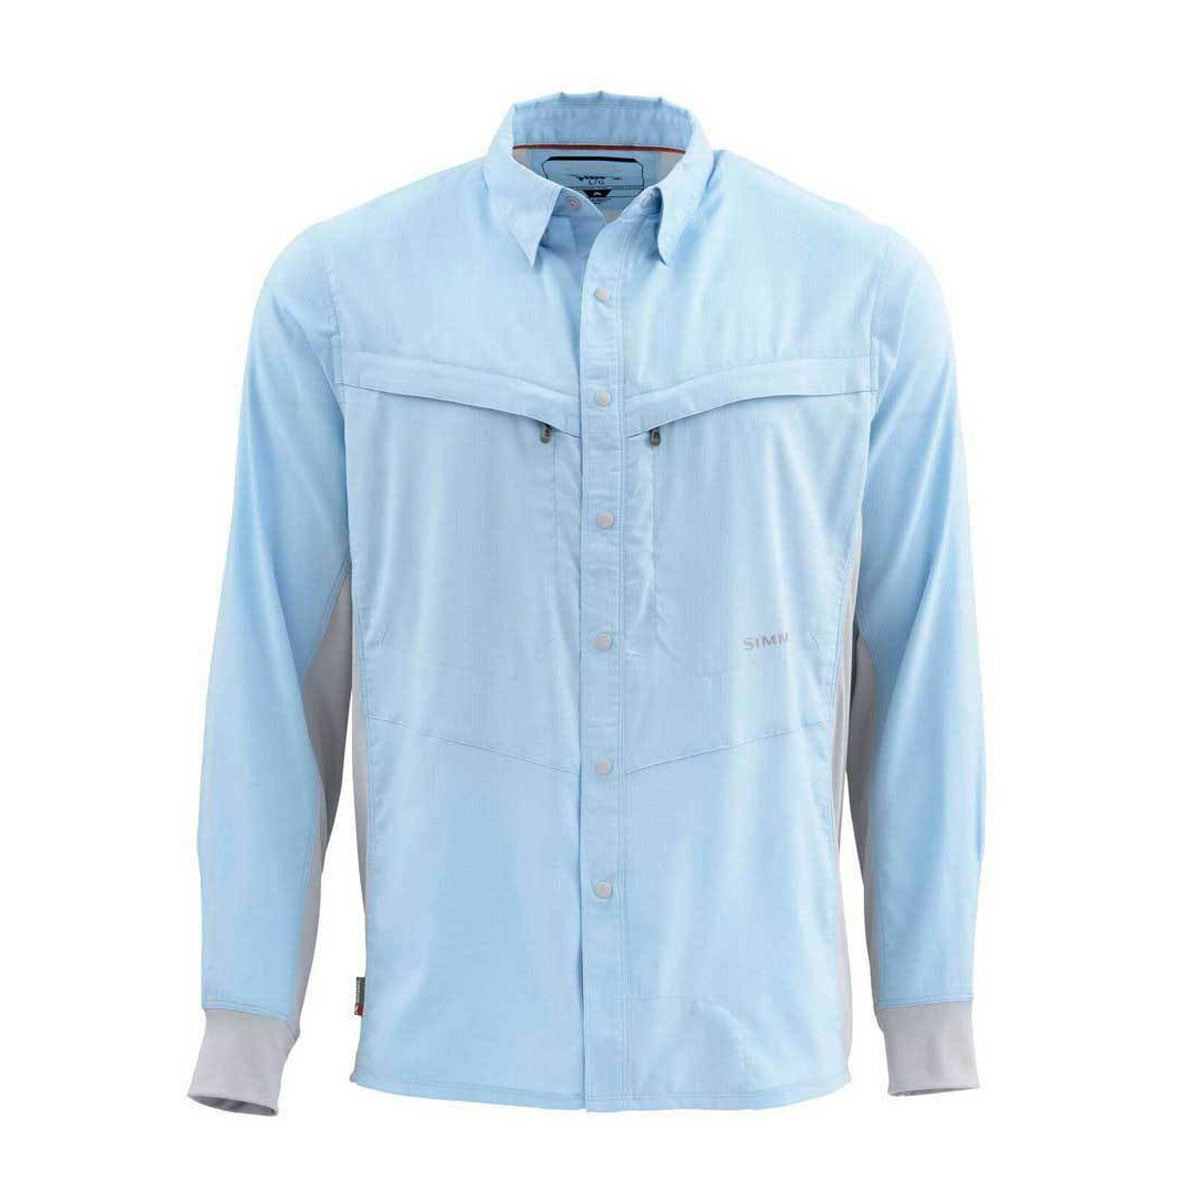 Simms Intruder BiComp Long Sleeve Shirt - Light Blue